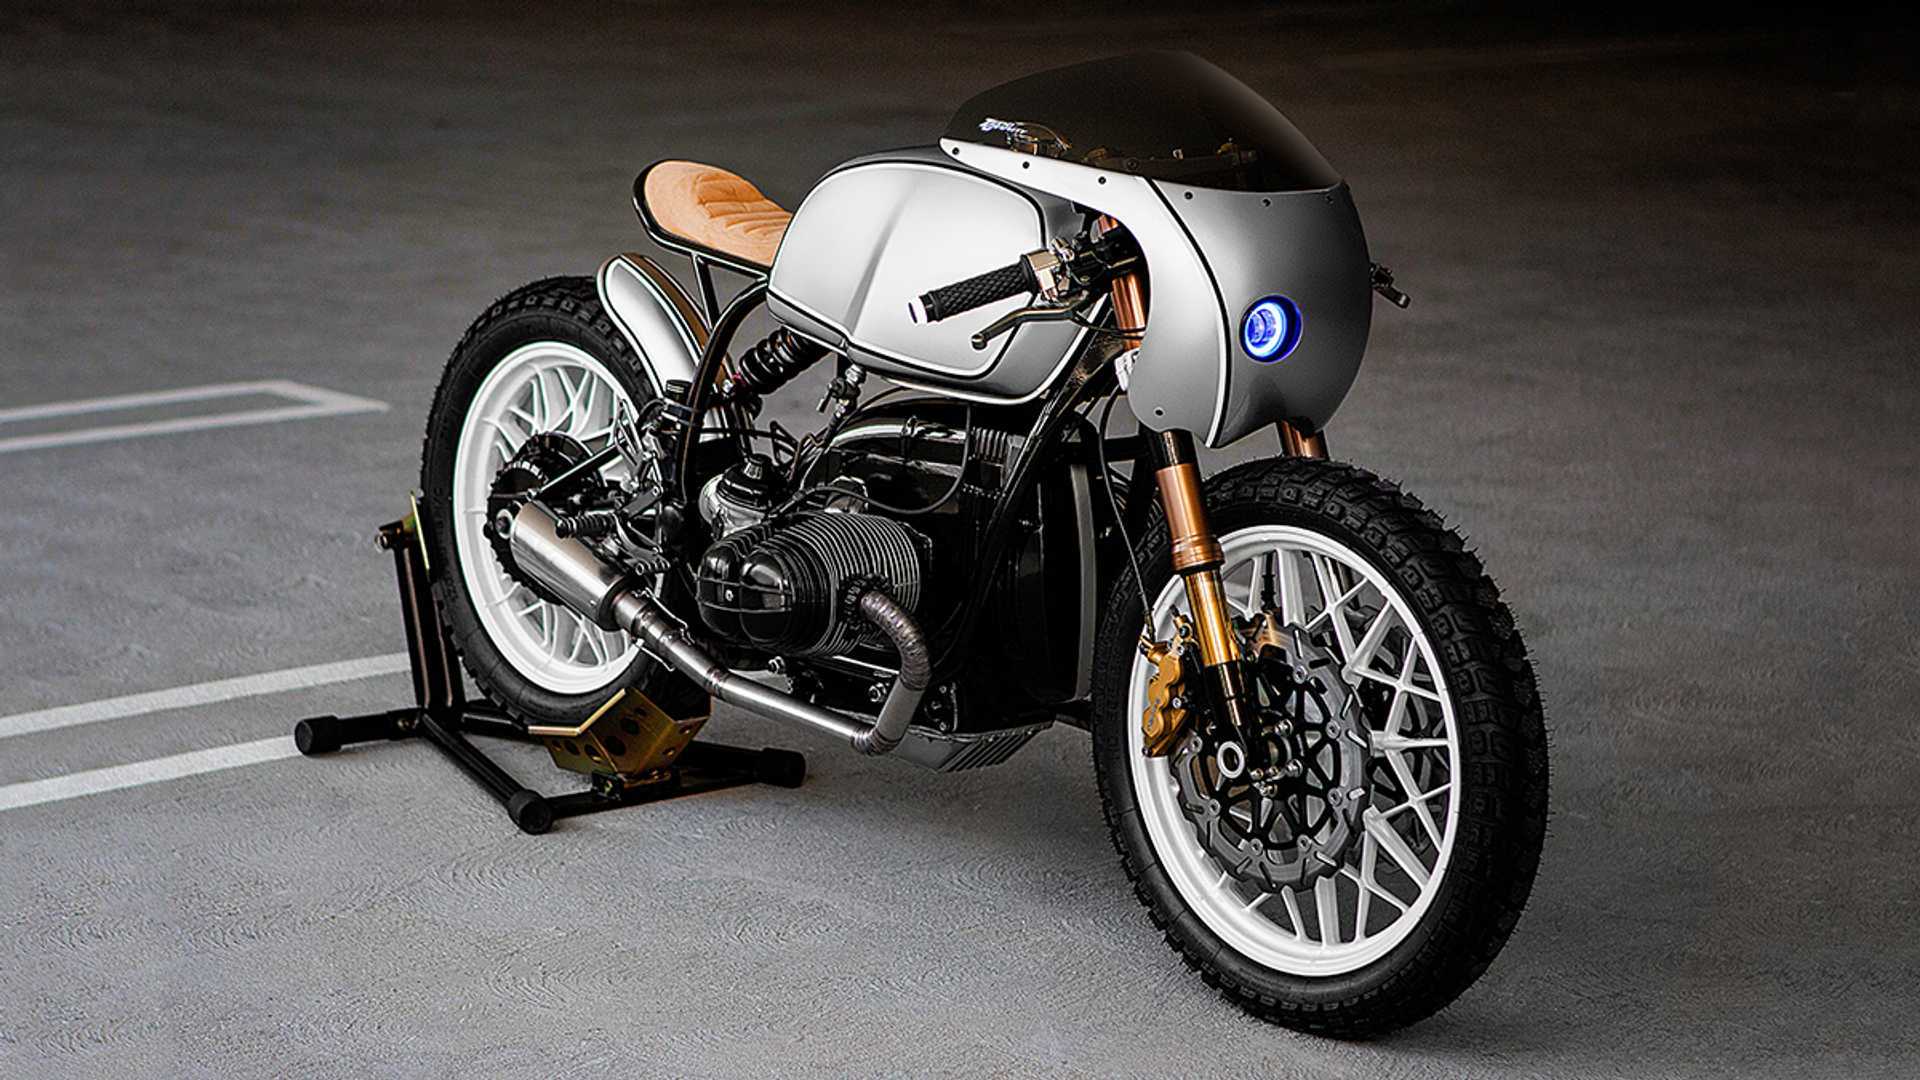 Trong hình ảnh có thể có xe môtô  Yamaha cafe racer Cafe racer design  Cb400 cafe racer